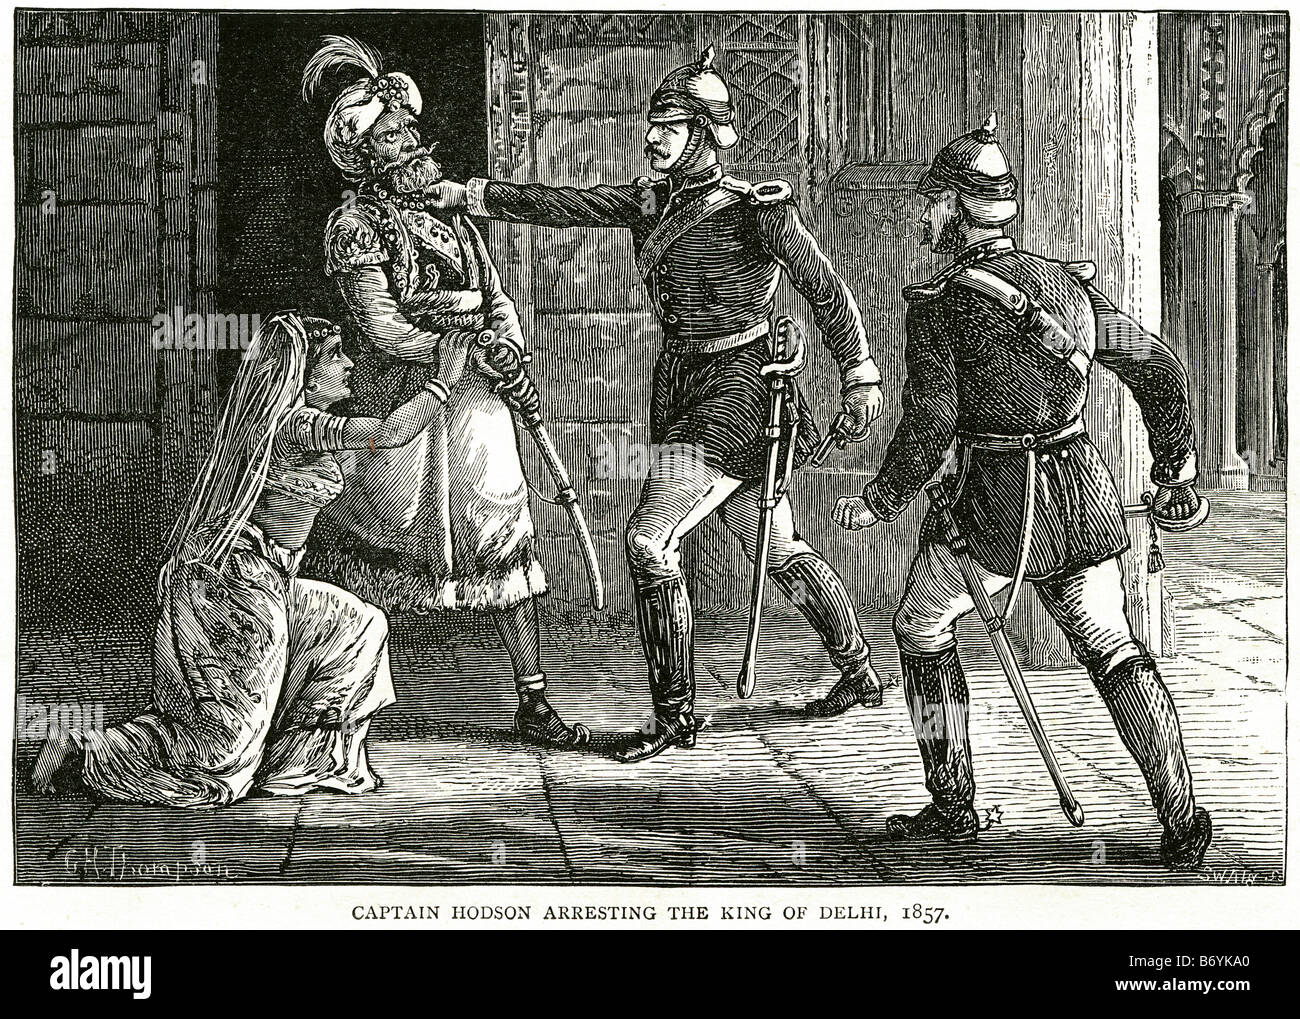 Le capitaine hodson arrêter roi Delhi 1857 raj soldat britannique droit d'arrestation officielle uniforme épée Les Britanniques étaient lents de grève b Banque D'Images